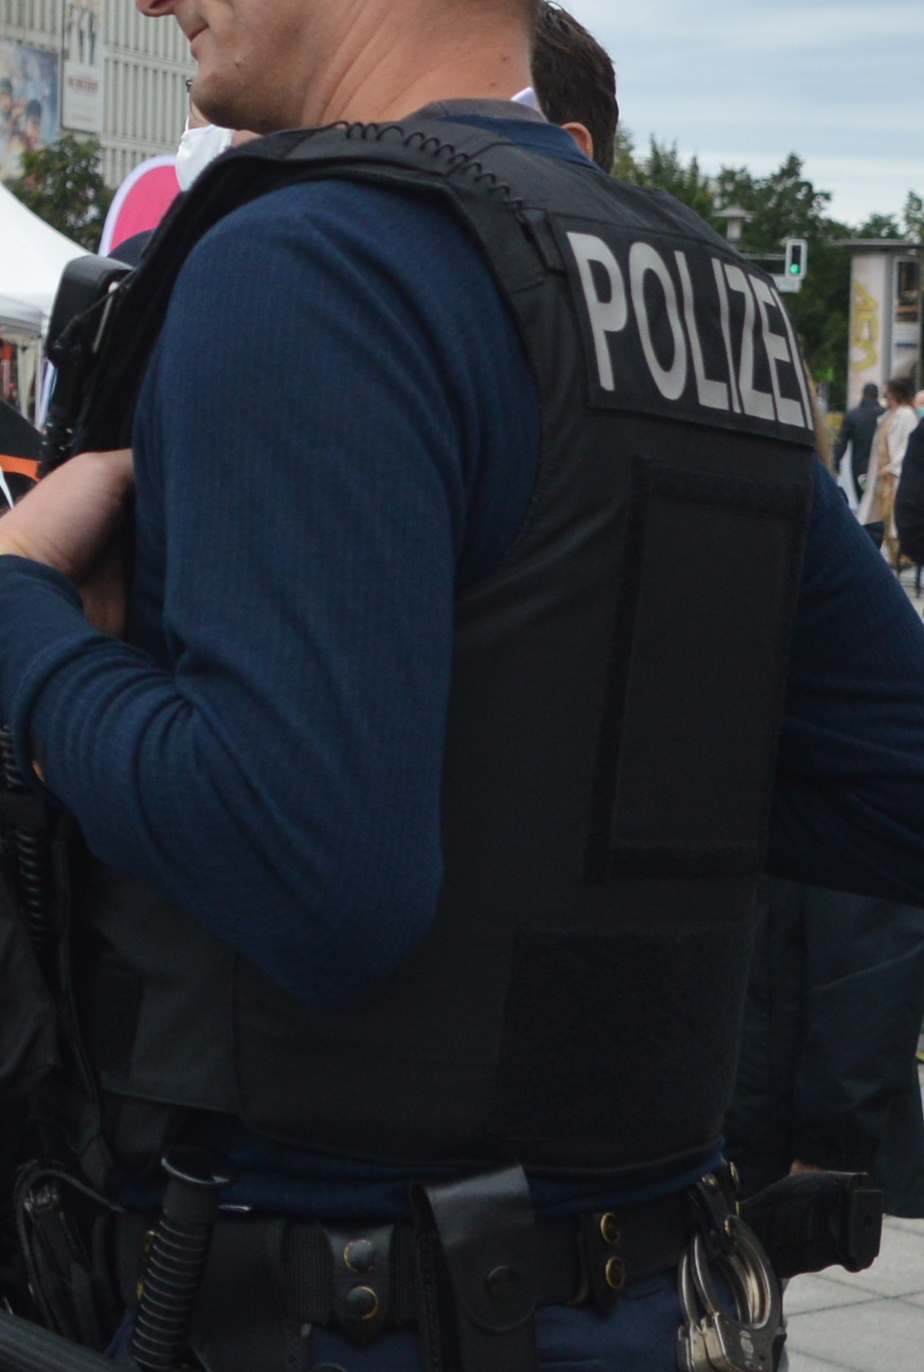 Der Cop trägt eine ballistische Schutzweste in schwarz mit Polizei-Schriftzug